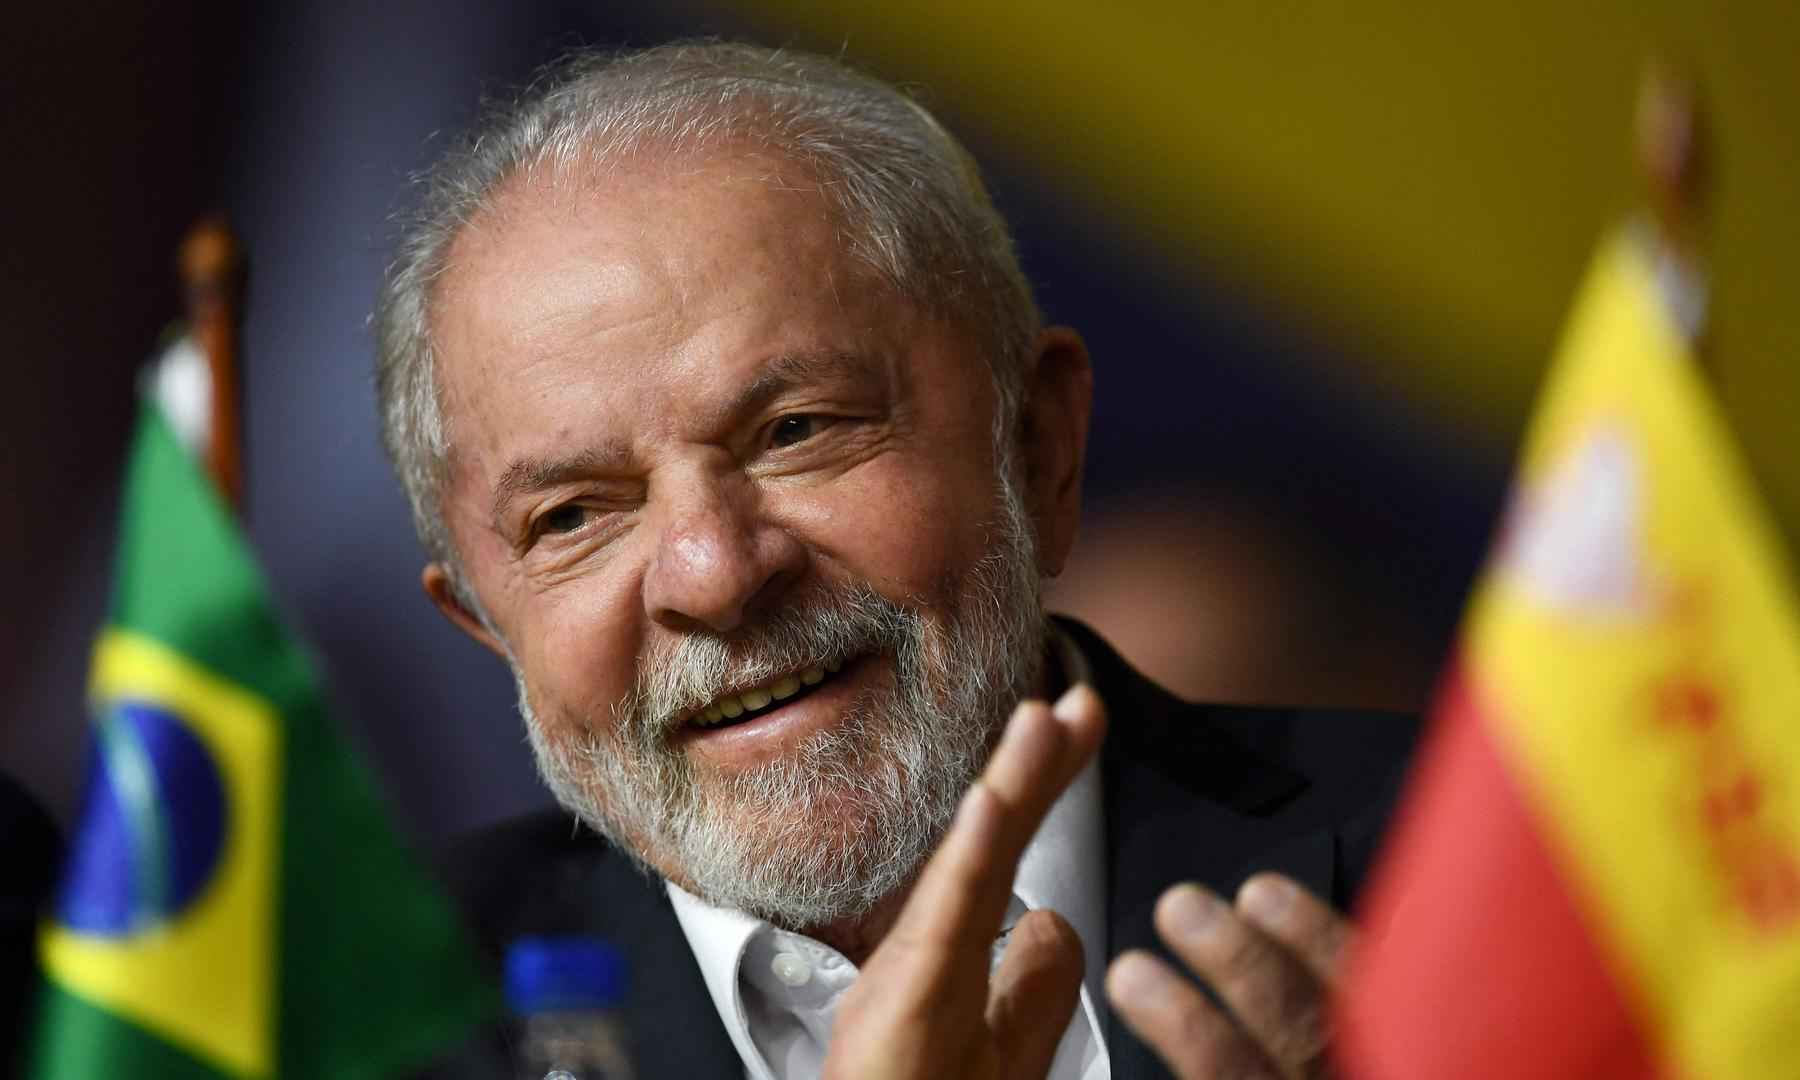 "Lula ladrão, seu lugar é na prisão." Finalmente concordo com bolsominions - EVARISTO SA / AFP